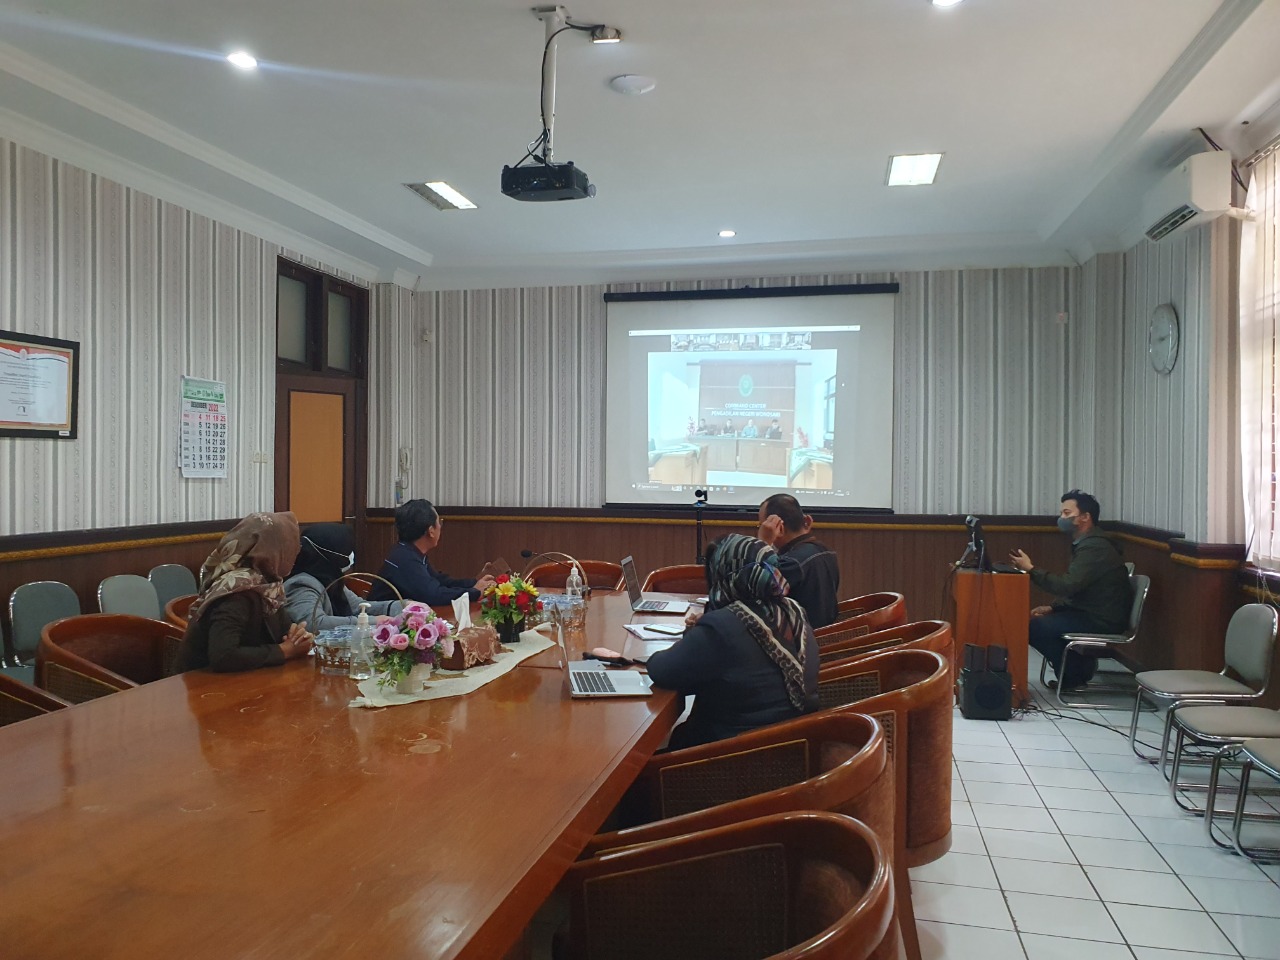 Pengadilan Negeri Yogyakarta Mengikuti Rapat Koordinasi Satgas SIPP Se Wilayah Hukum Pengadilan Tinggi Yogyakarta